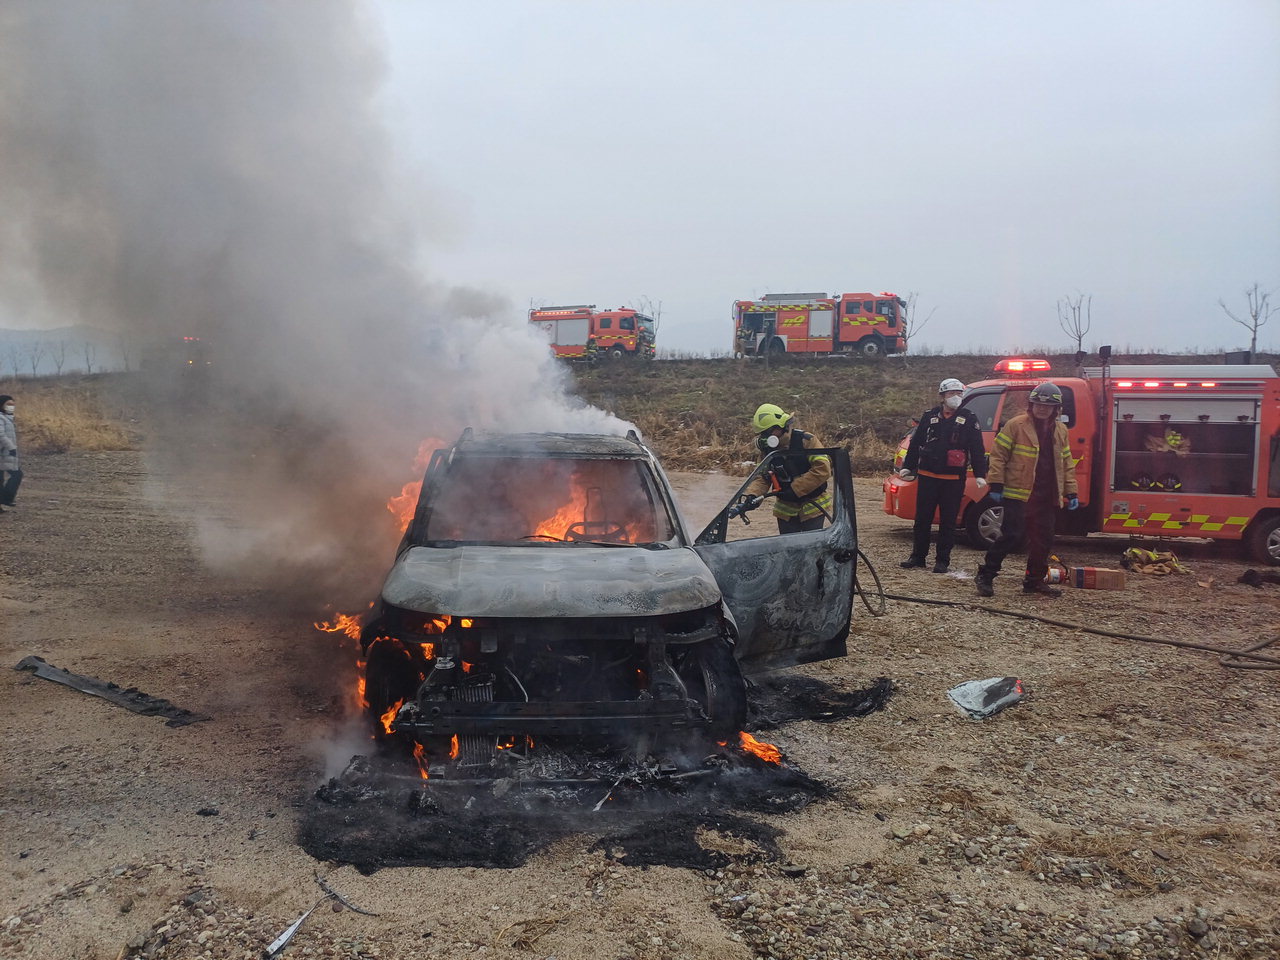 2일 오전 10시 13분께 충북 진천군 초평면 영구리의 한 하천변에 있던 차량에서 화재가 발생했다. / 진천소방서